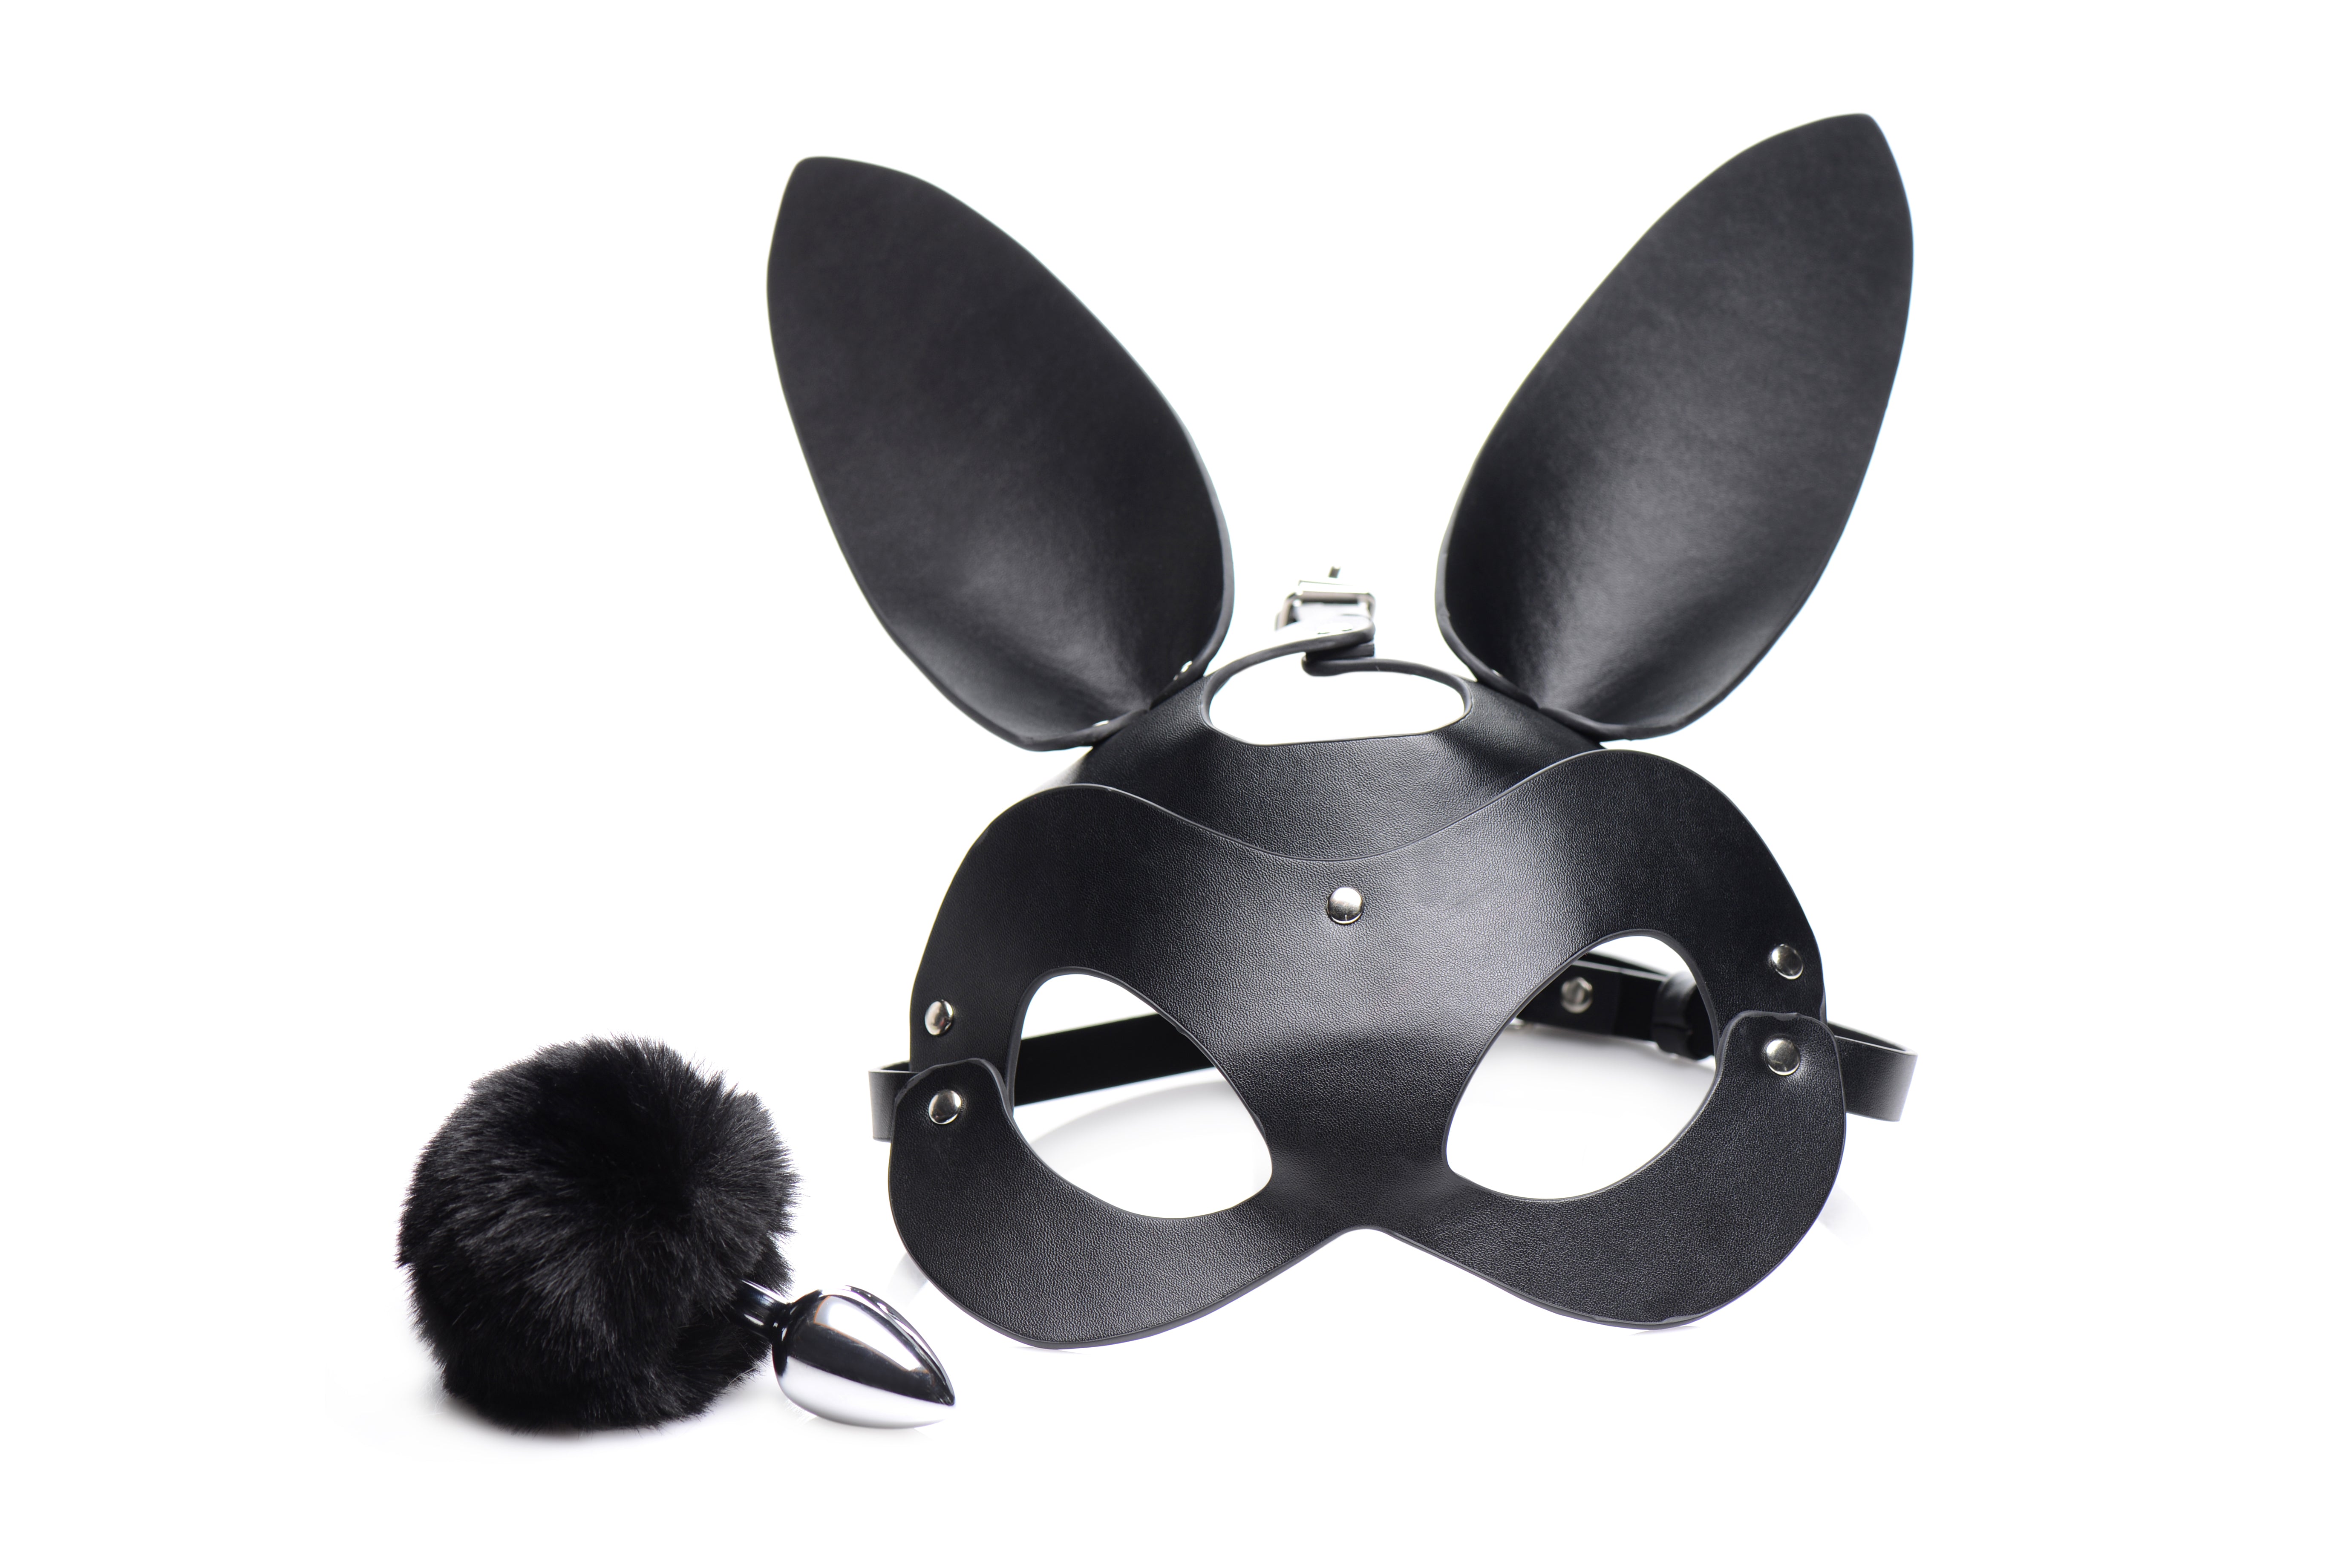 Tailz - Bunny Tail Anal Plug and Mask Set - Black